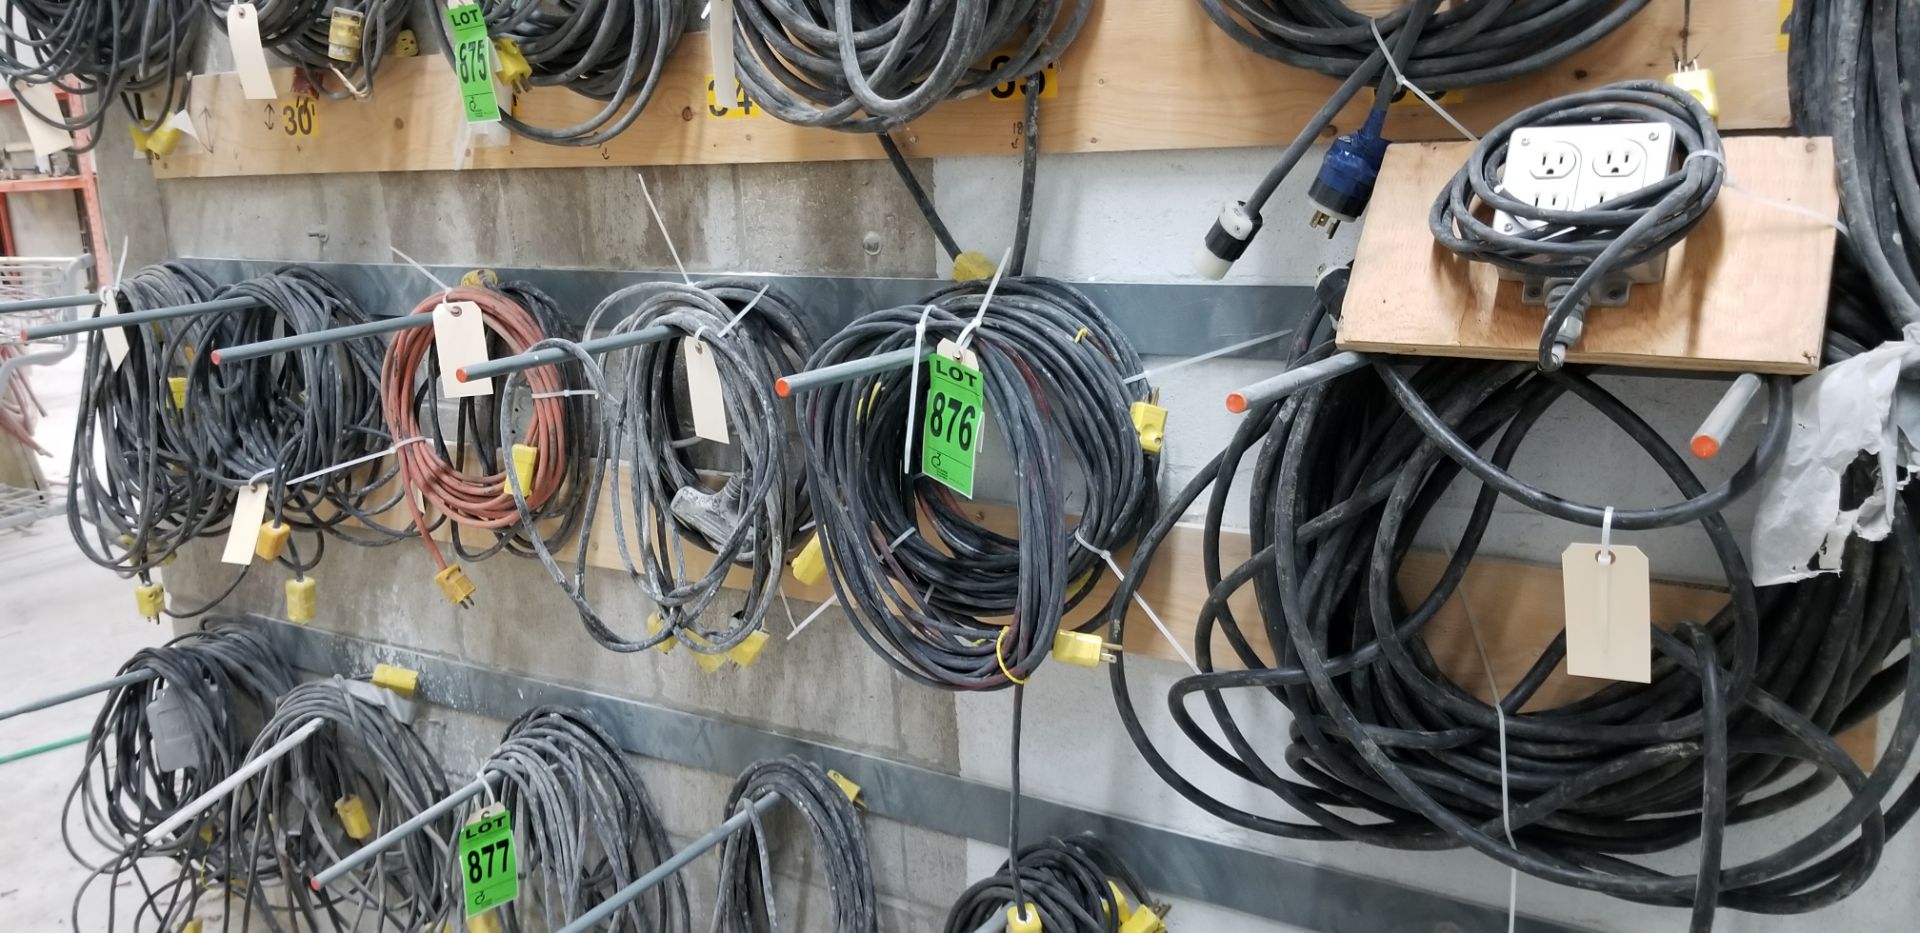 Lot of (12) extension cords // Lot de (12) rallonges électriques